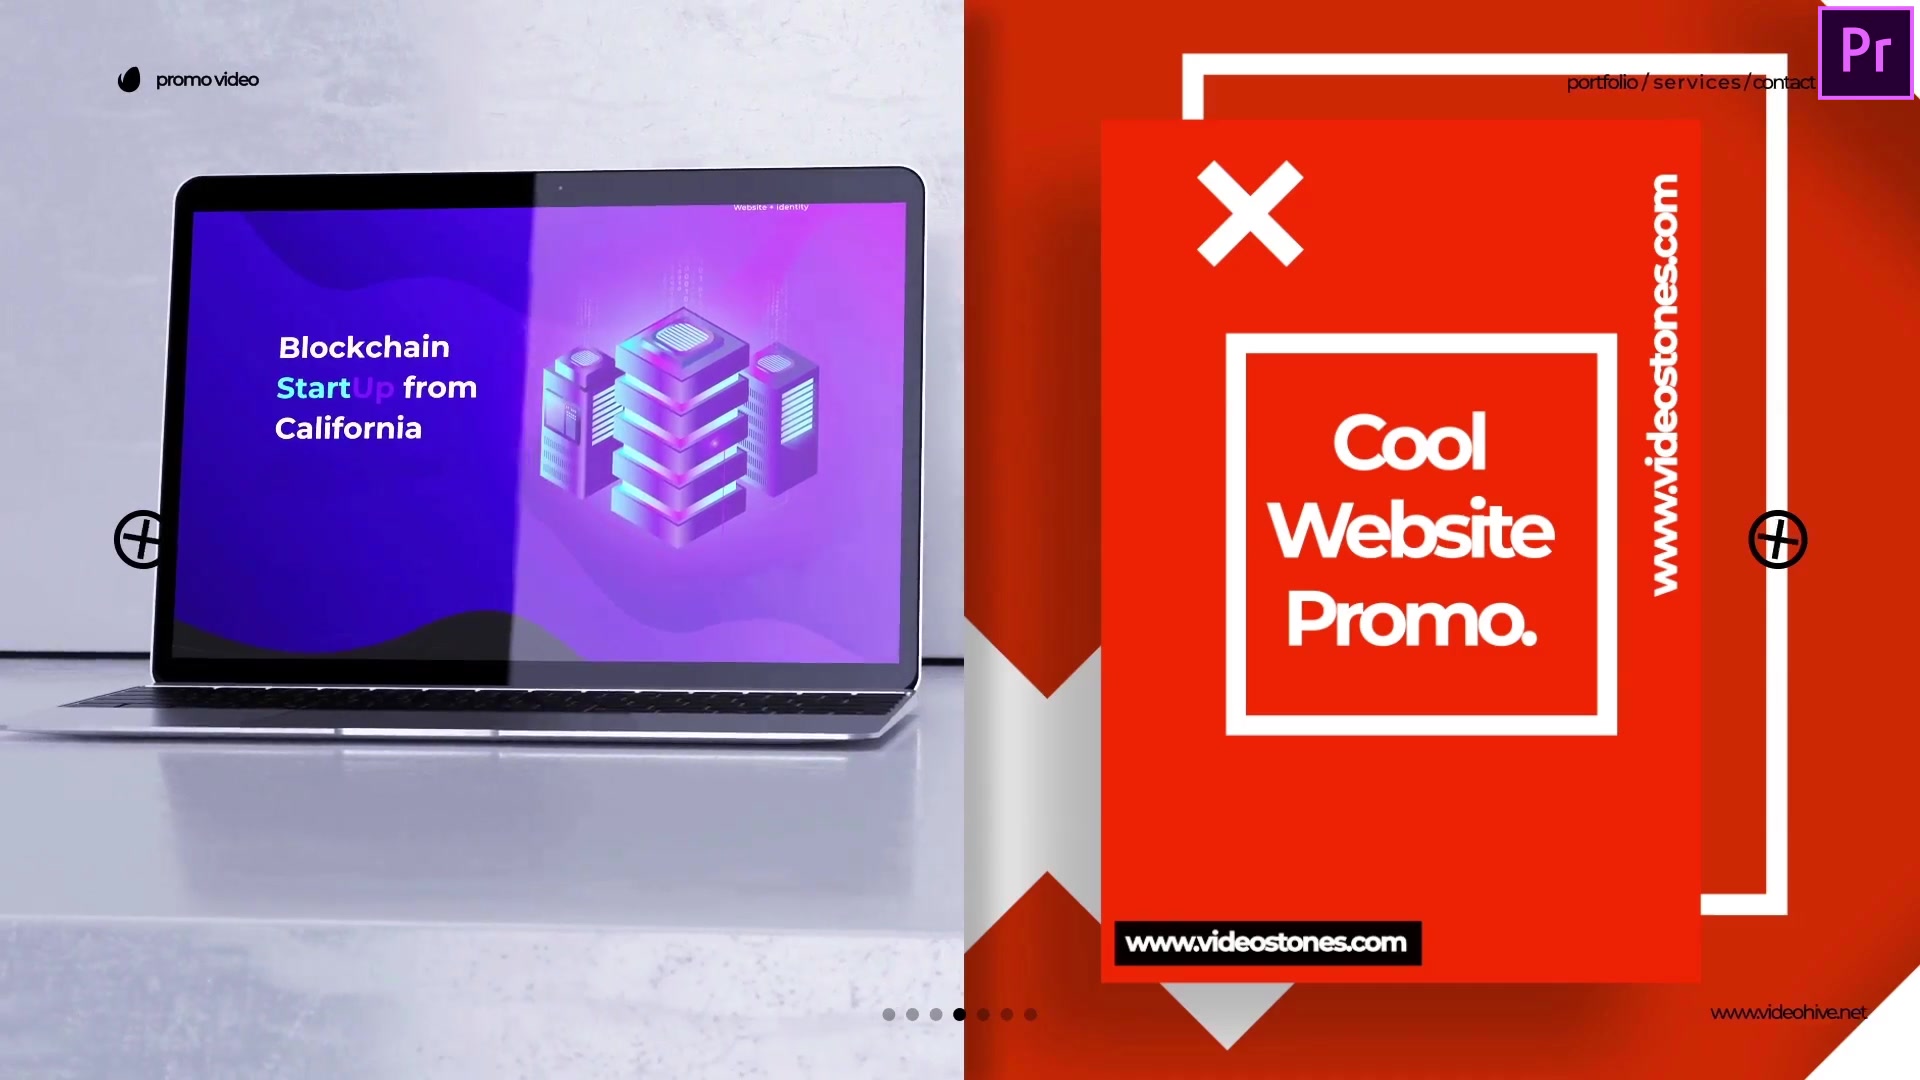 Cool Web Promo Website Showcase Video Premiere Pro Videohive 34306139 Premiere Pro Image 8